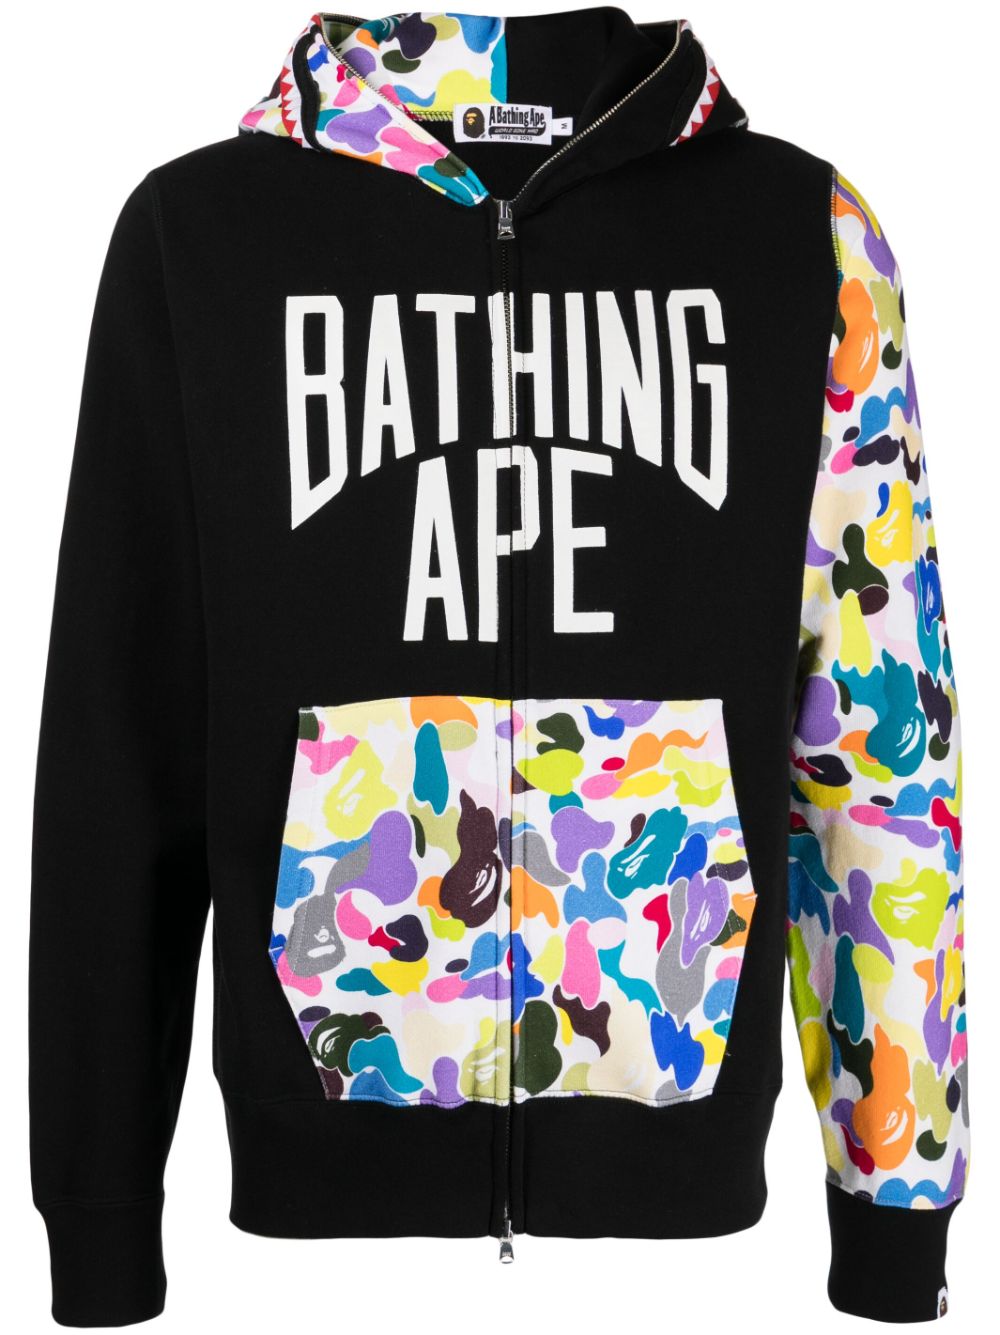 A BATHING APE® Hoodies for Men - BAPE Sweater - FARFETCH